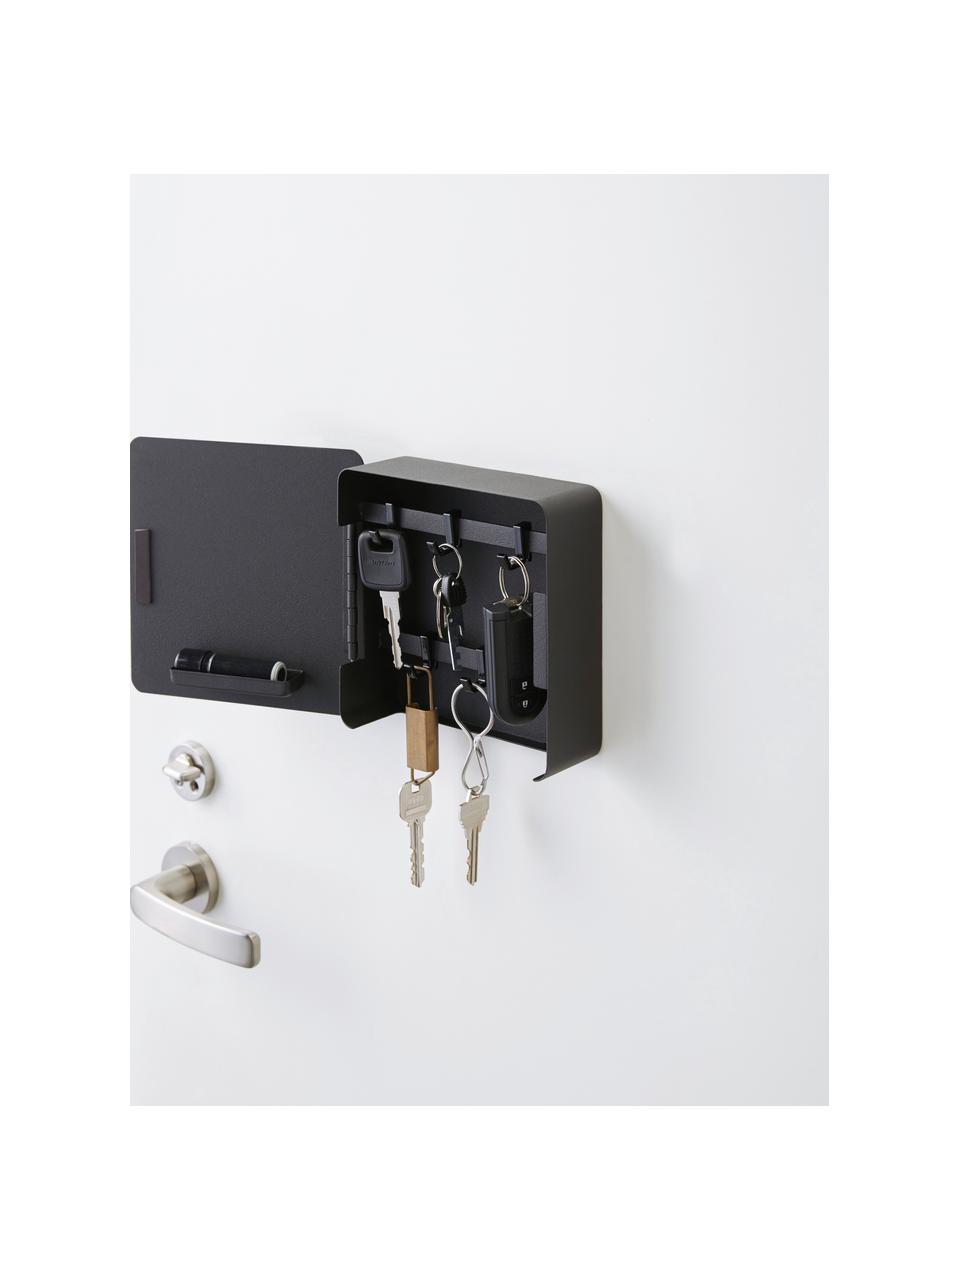 Magnetyczne pudełko na klucze Rin, Stal malowana proszkowo, Czarny, S 16 x W 16 cm